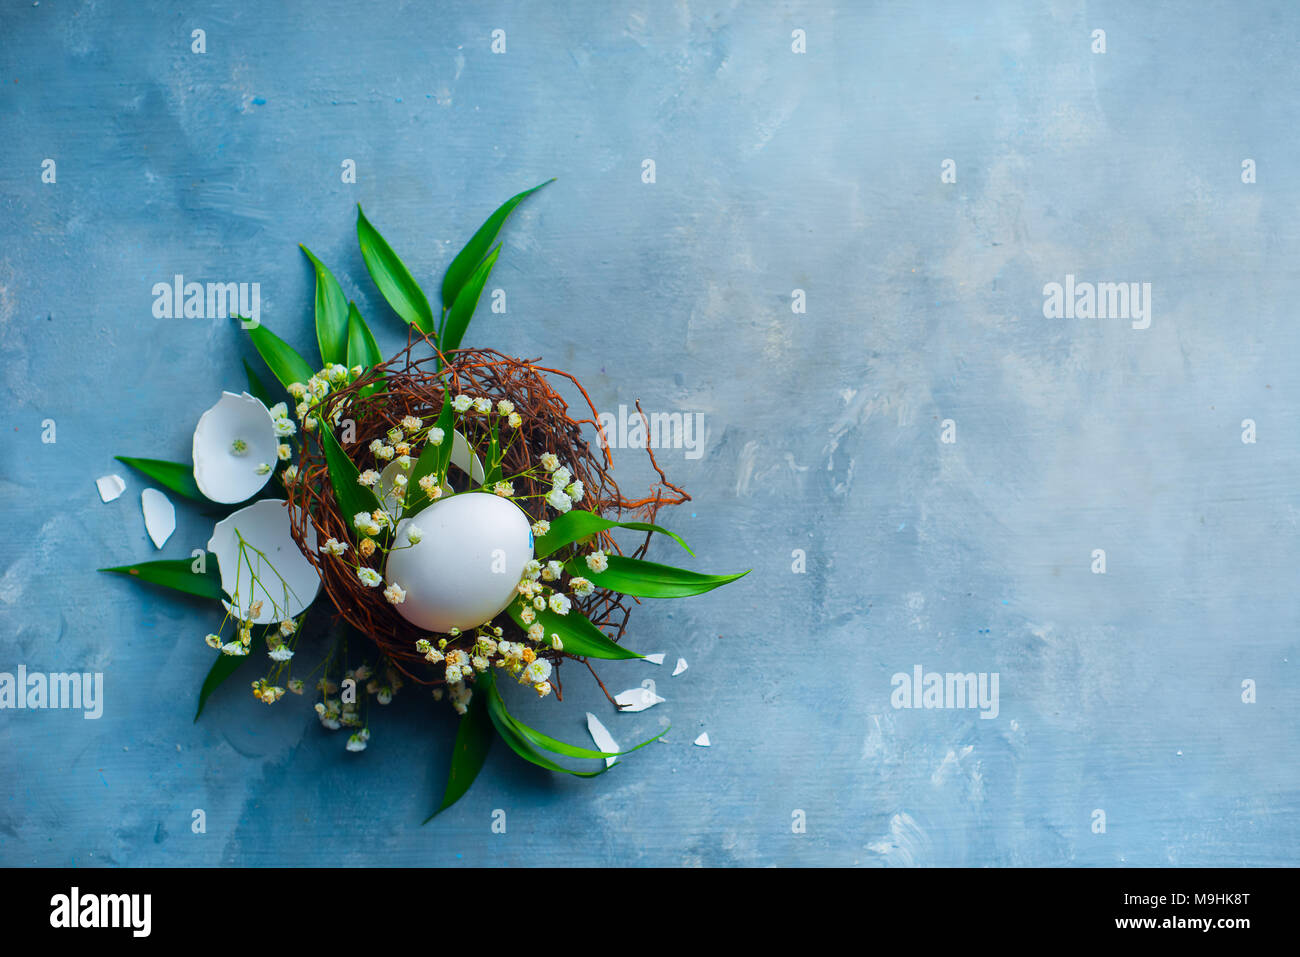 Pasqua floreali concetto di decorazione con il bianco delle uova in un nido, foglie verdi e la molla gypsophila fiori. Cucina organica concetto con copia spazio. Foto Stock